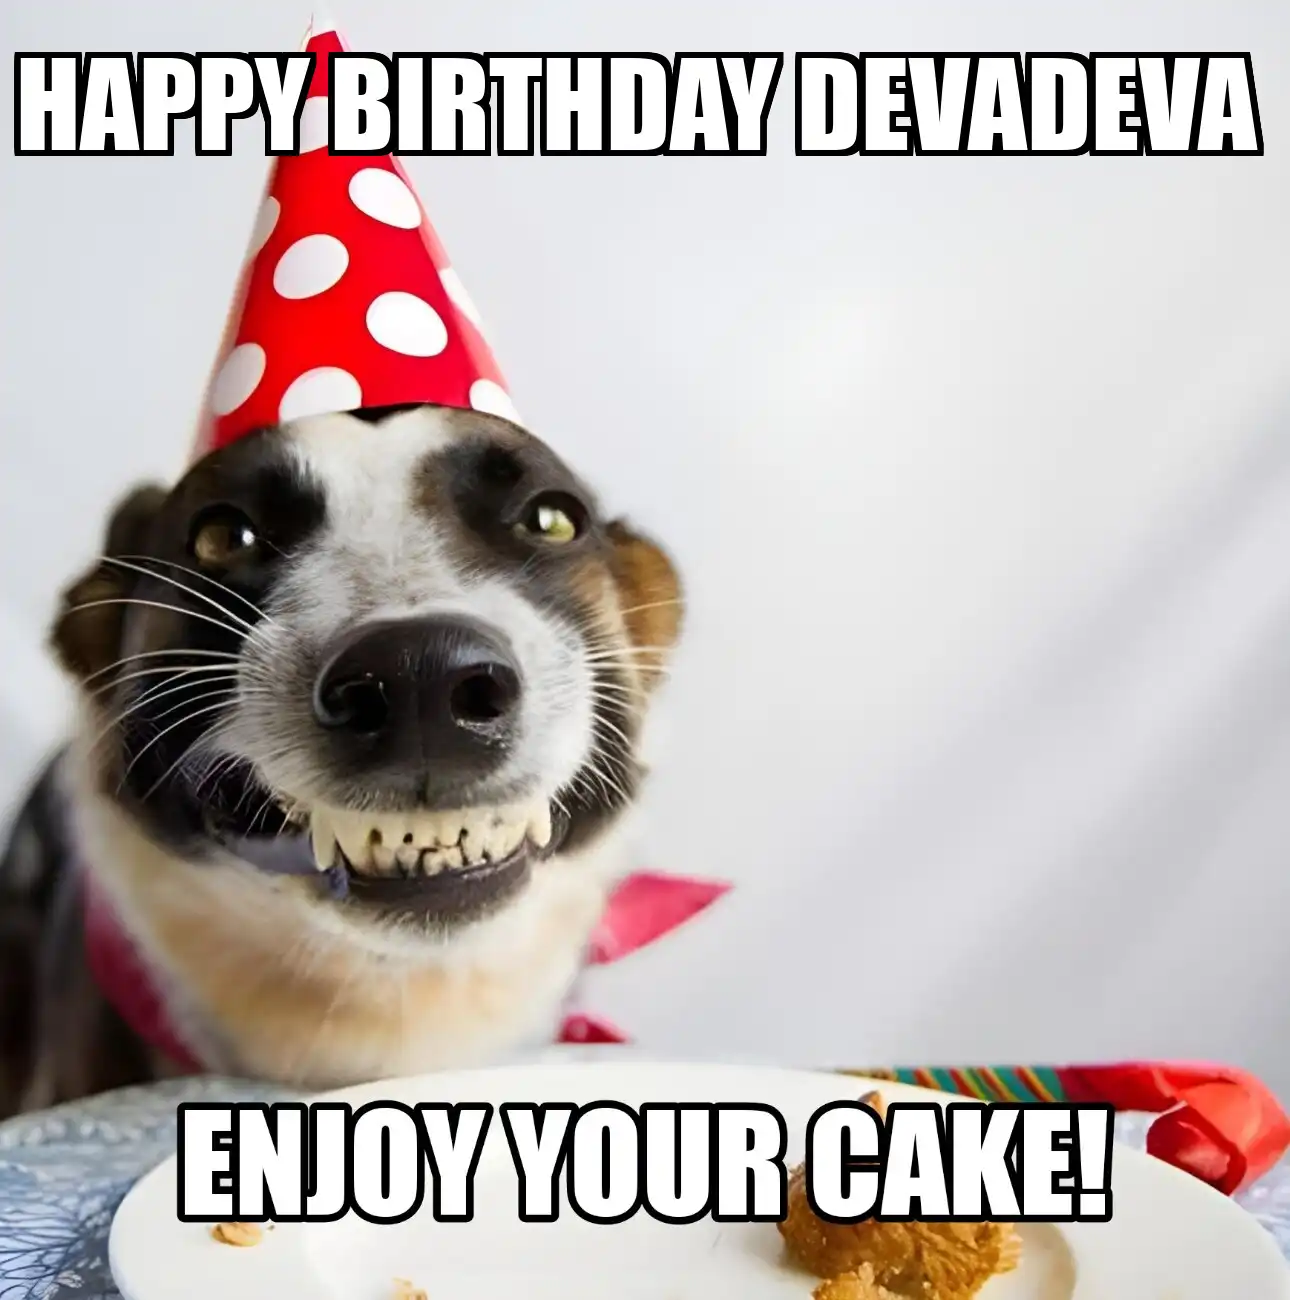 Happy Birthday Devadeva Enjoy Your Cake Dog Meme